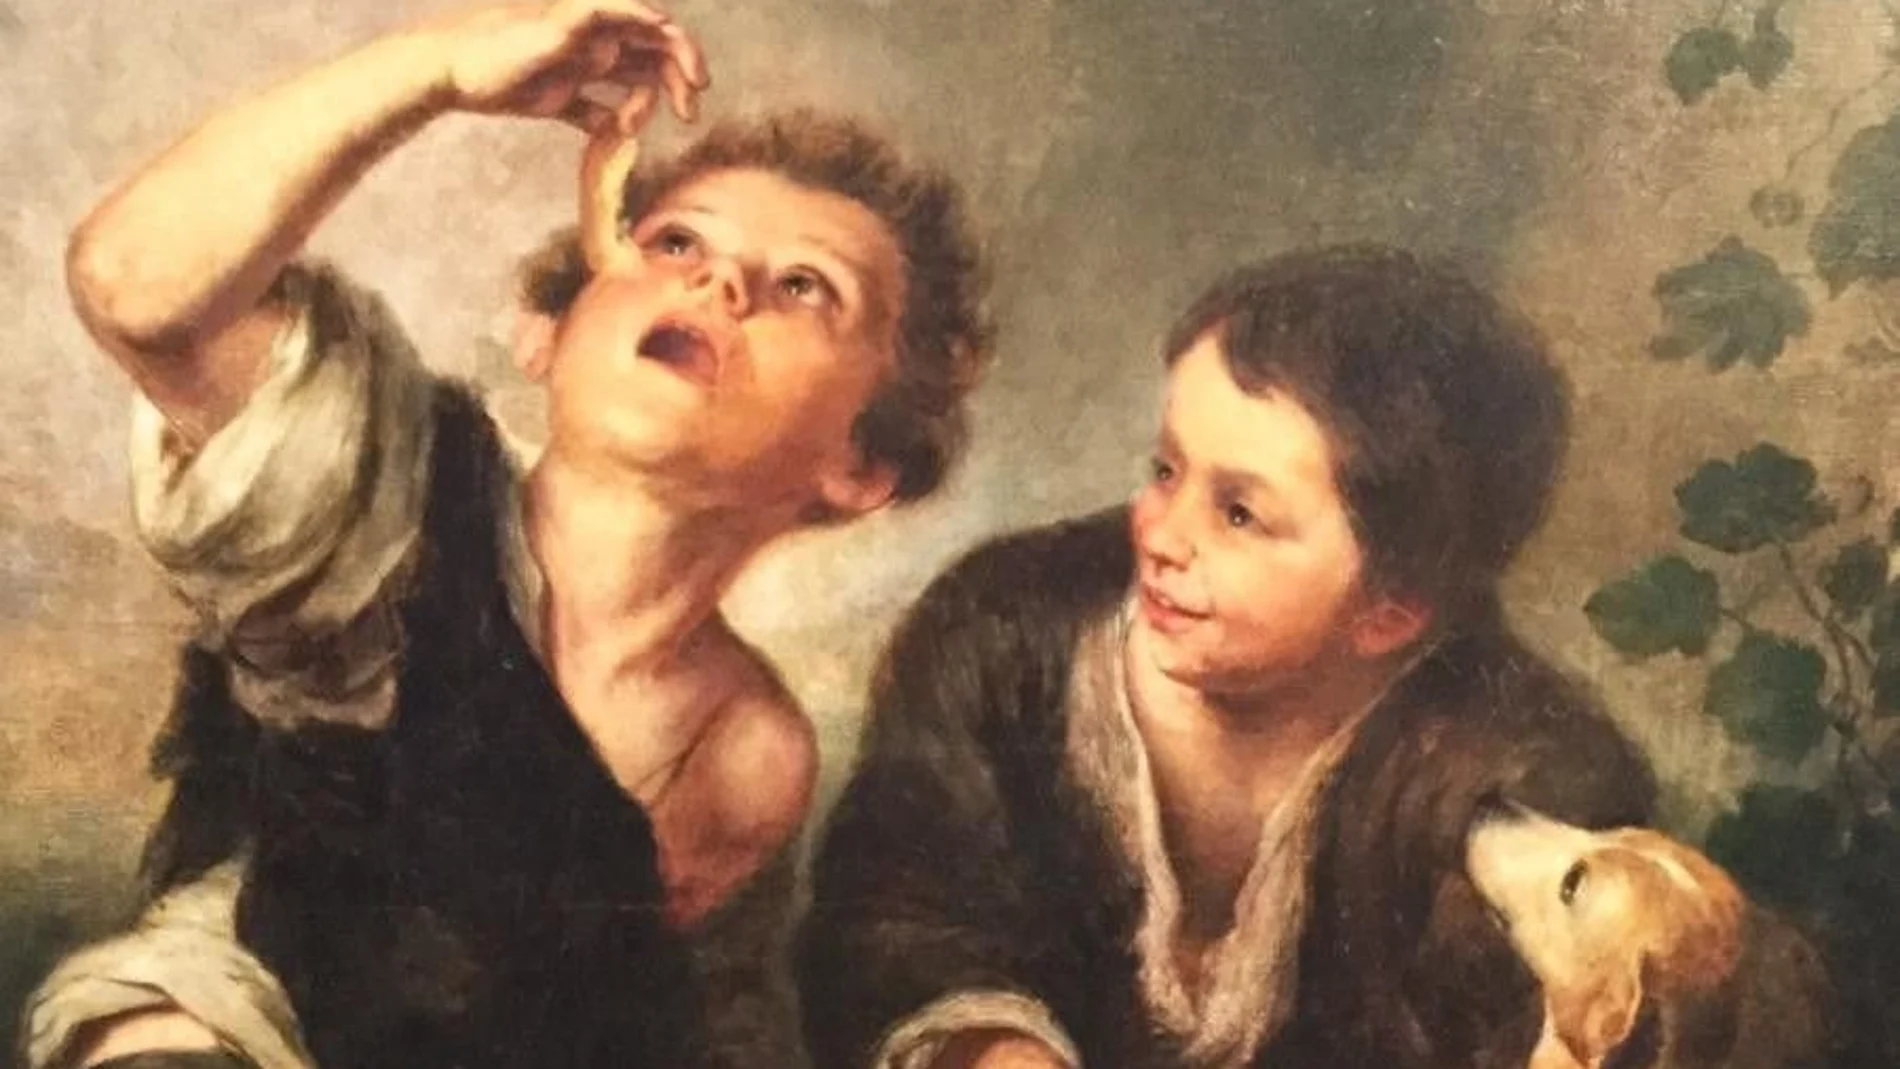 El cuadro de Murillo “Niños comiendo pastel” pintado entre los años 1670 y 1675